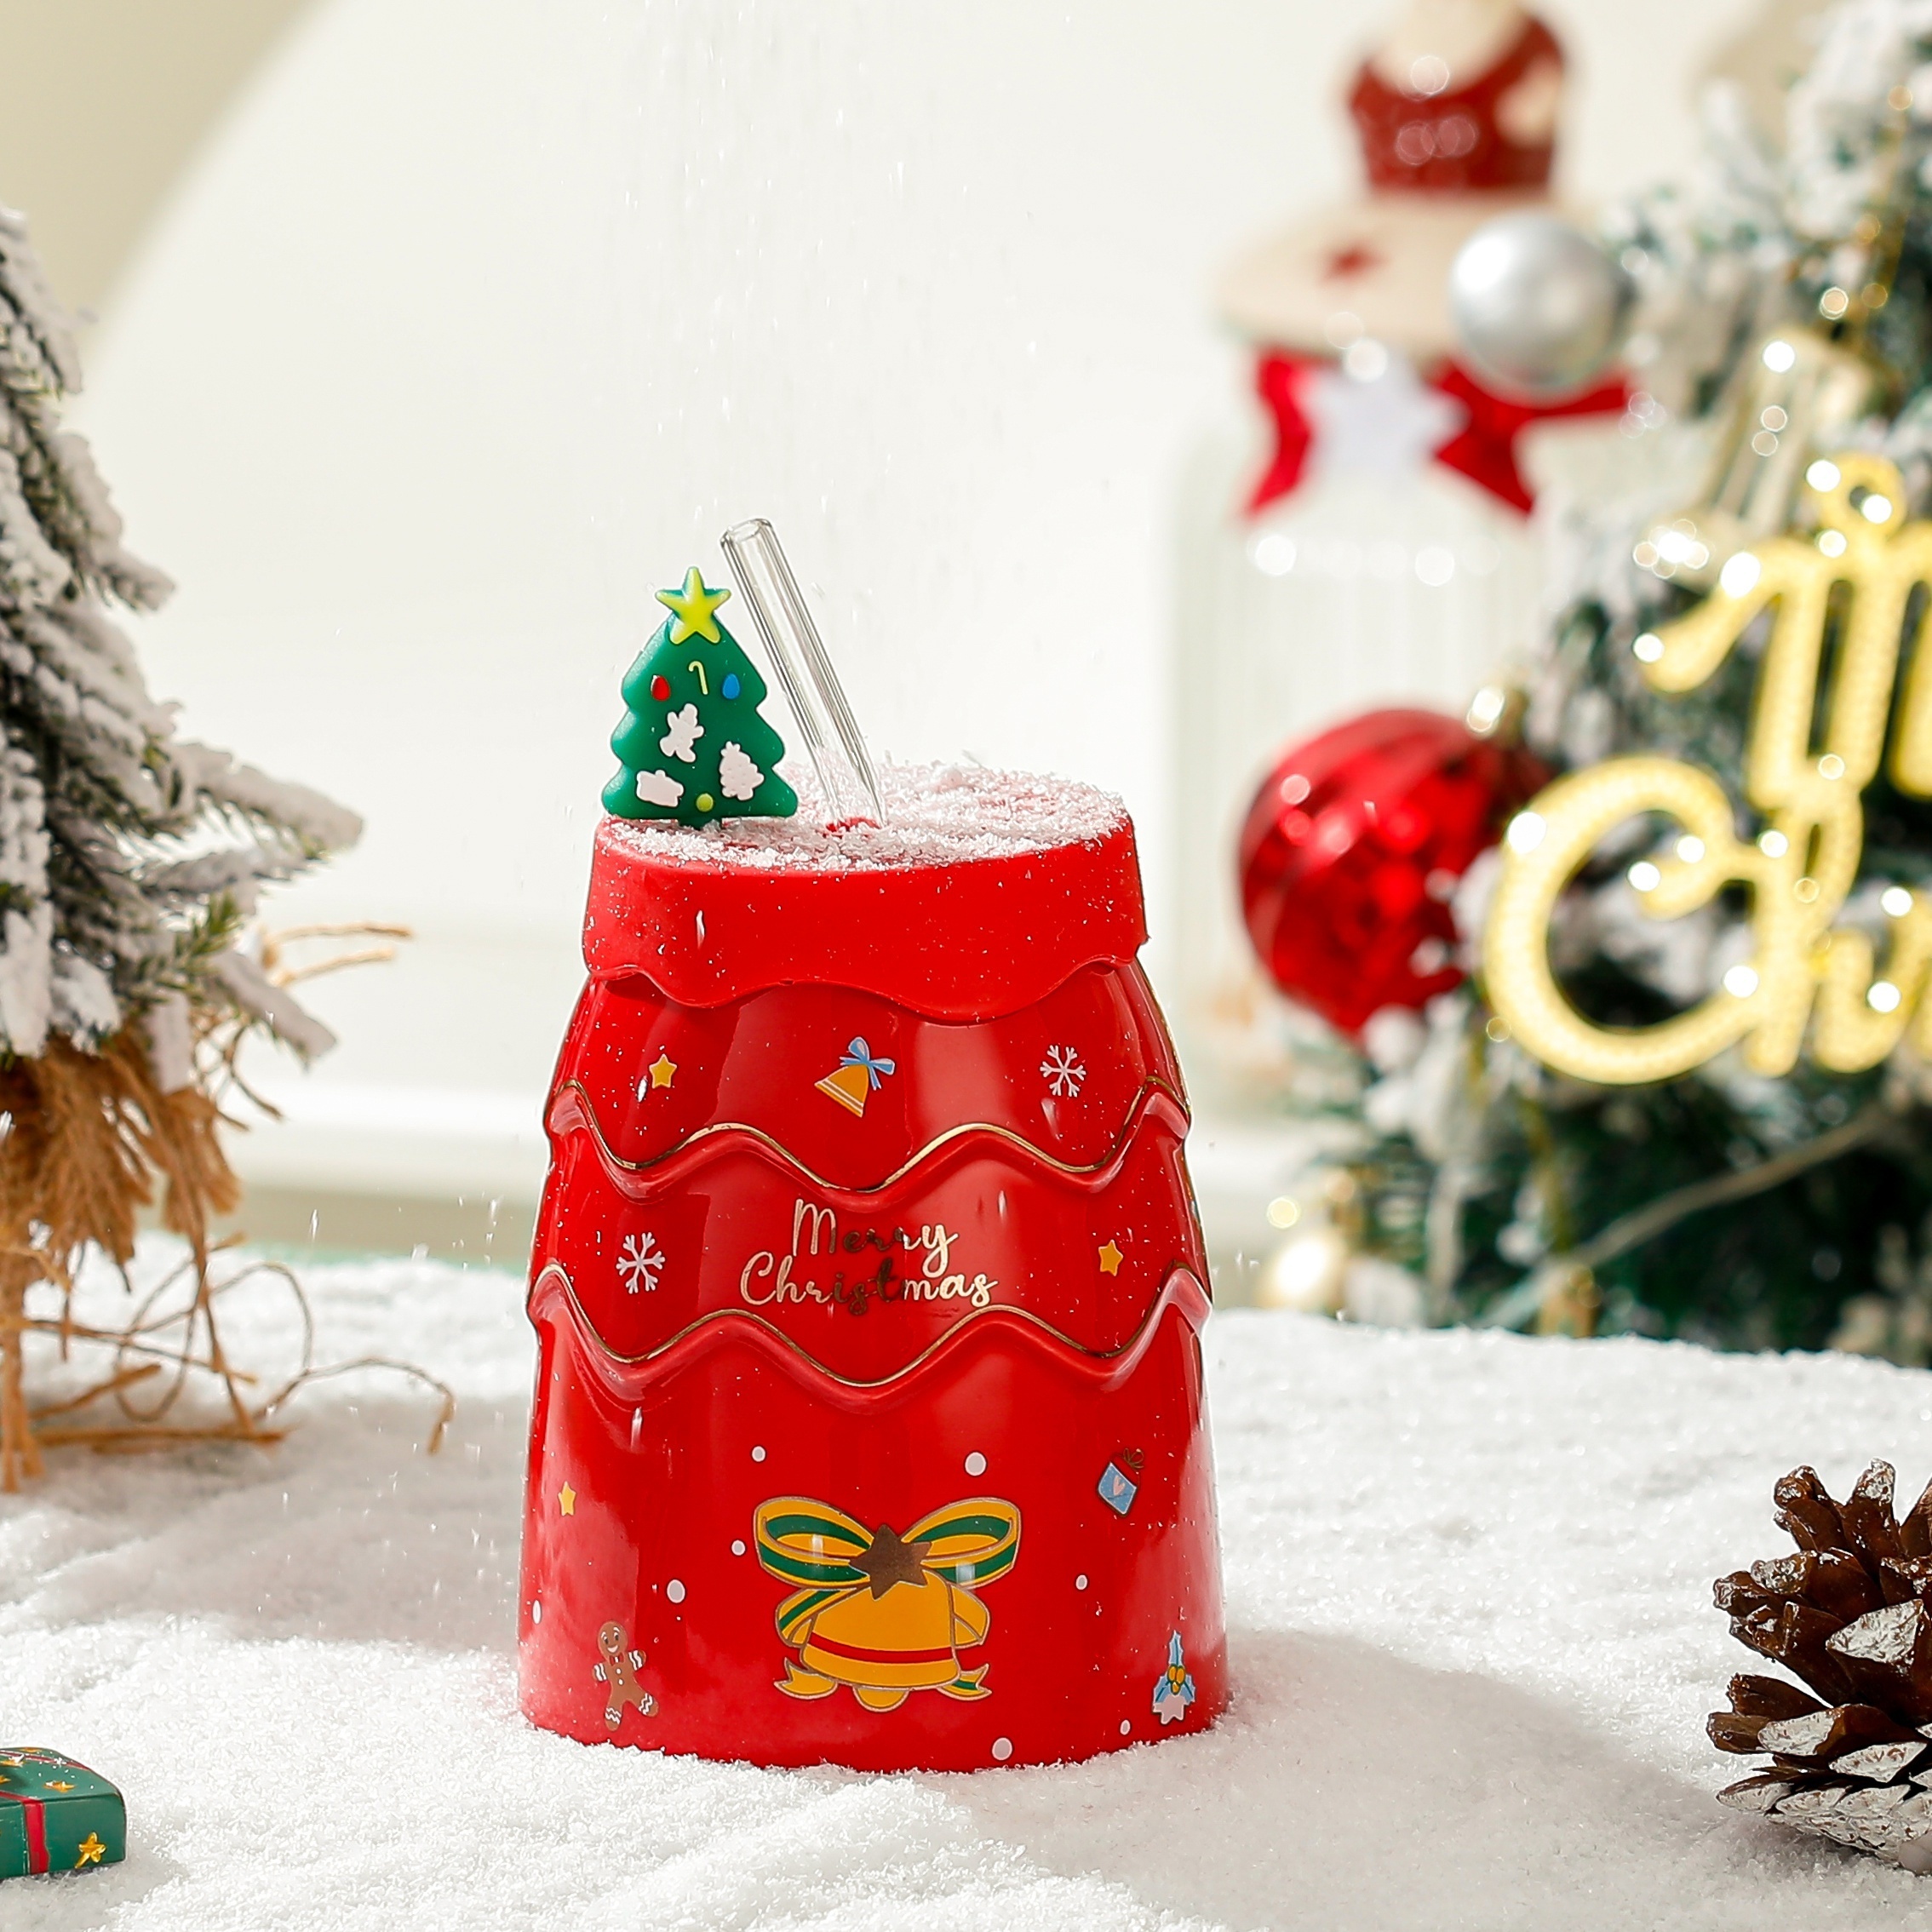 Christmas Coffee Mug With Lid And Straw, Cute Christmas Tree Ceramic Mug,  Winter Holiday Mug Gift Set, Novelty Mug With Handle, Christmas Cups Gifts  For Women, Men - Temu Belgium